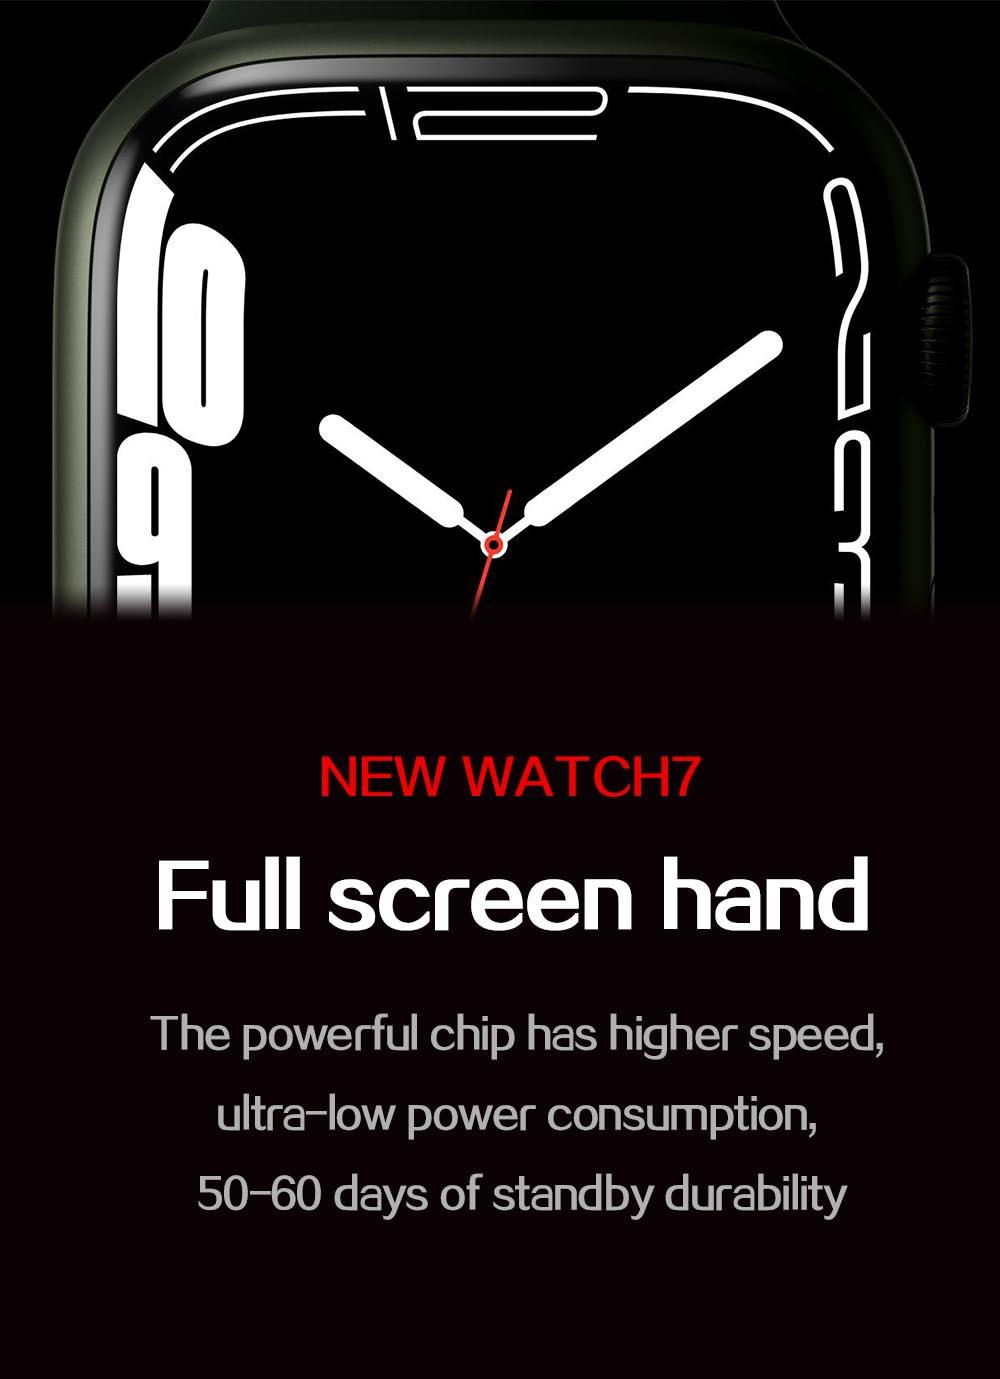 Đồng hồ thông minh gốc dành cho nam giới Đồng hồ thông minh I7 Pro Max Series 7 Điện thoại tùy chỉnh Đồng hồ thể thao mặt Phụ nữ không thấm nước cho nam giới